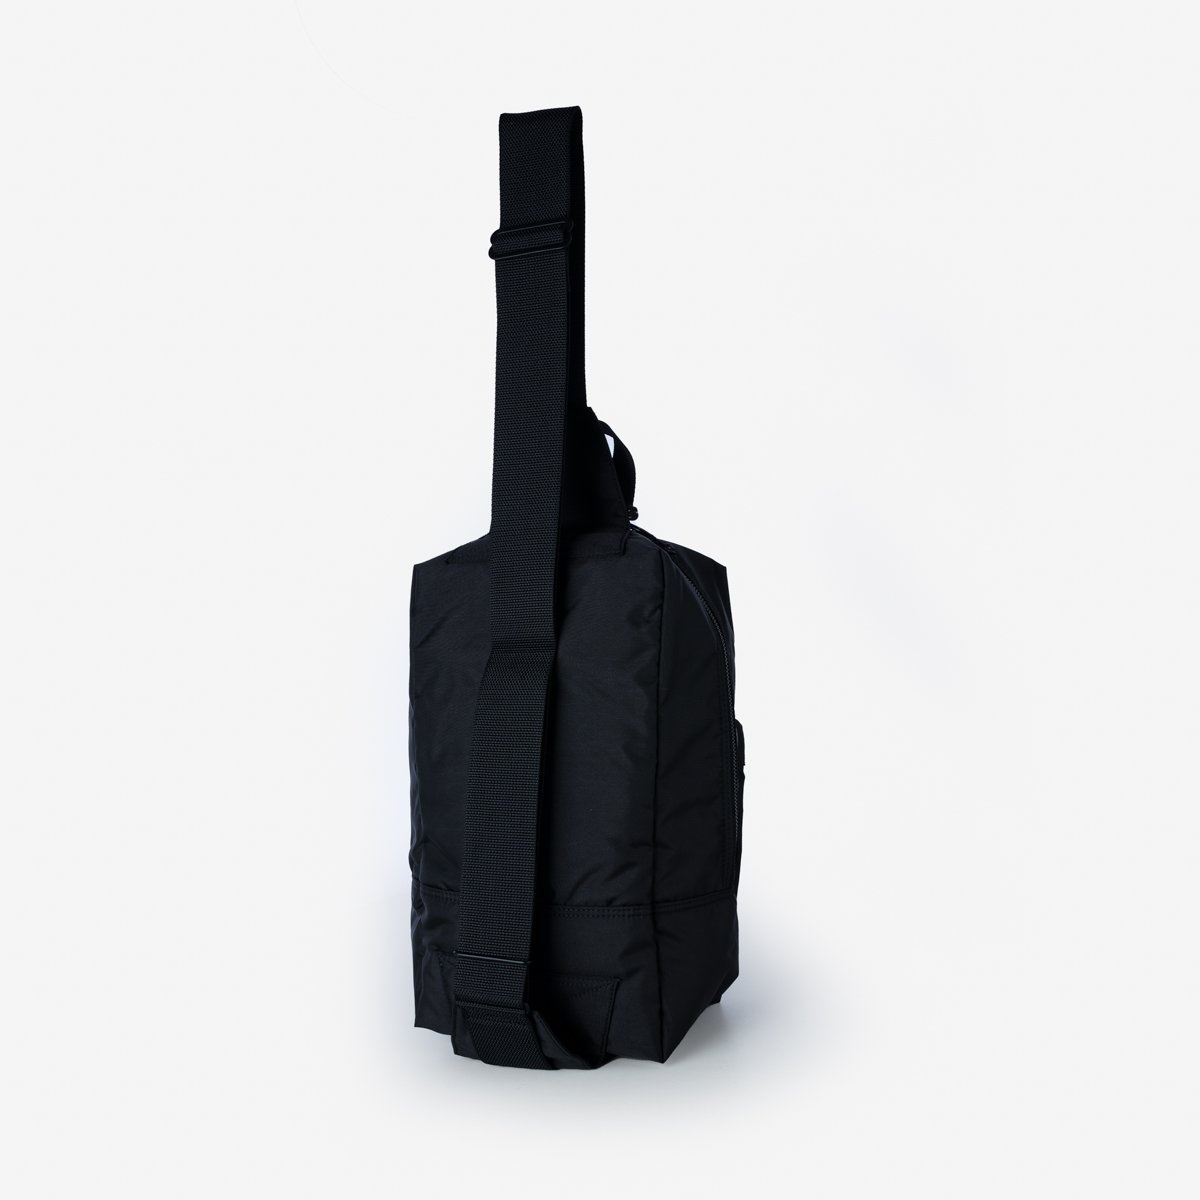 POR-FOR-SSB-BLK Porter - Yoshida & Co. - Force Sling Shoulder Bag - Black - 3